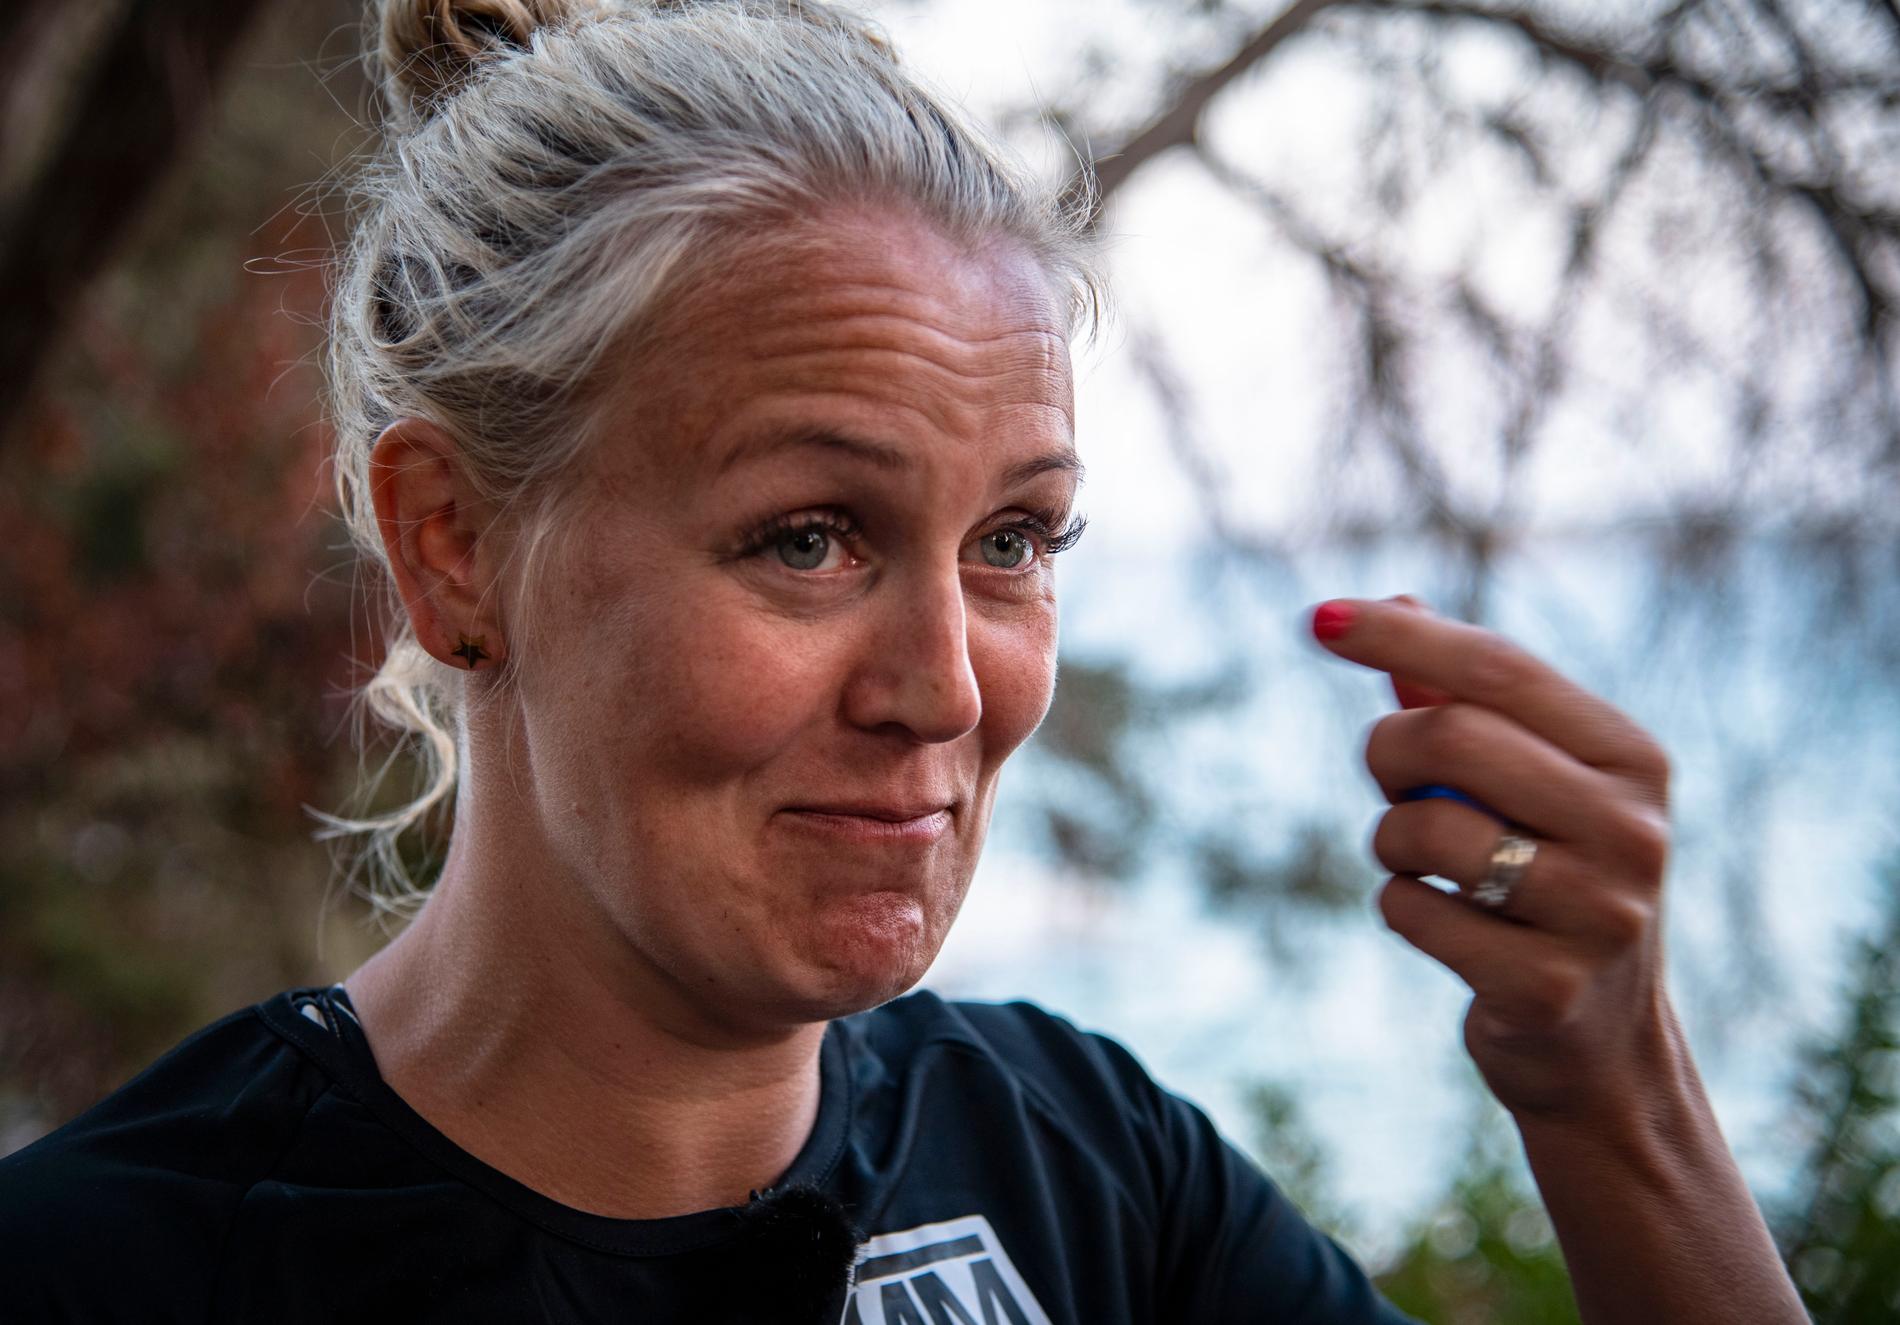 ”Jag har överträffat många rädslor idag.” Josefine Öqvist berättar om sin höjdskräck och paniken hon fick i vattnet efter att tävlingen genomförts.